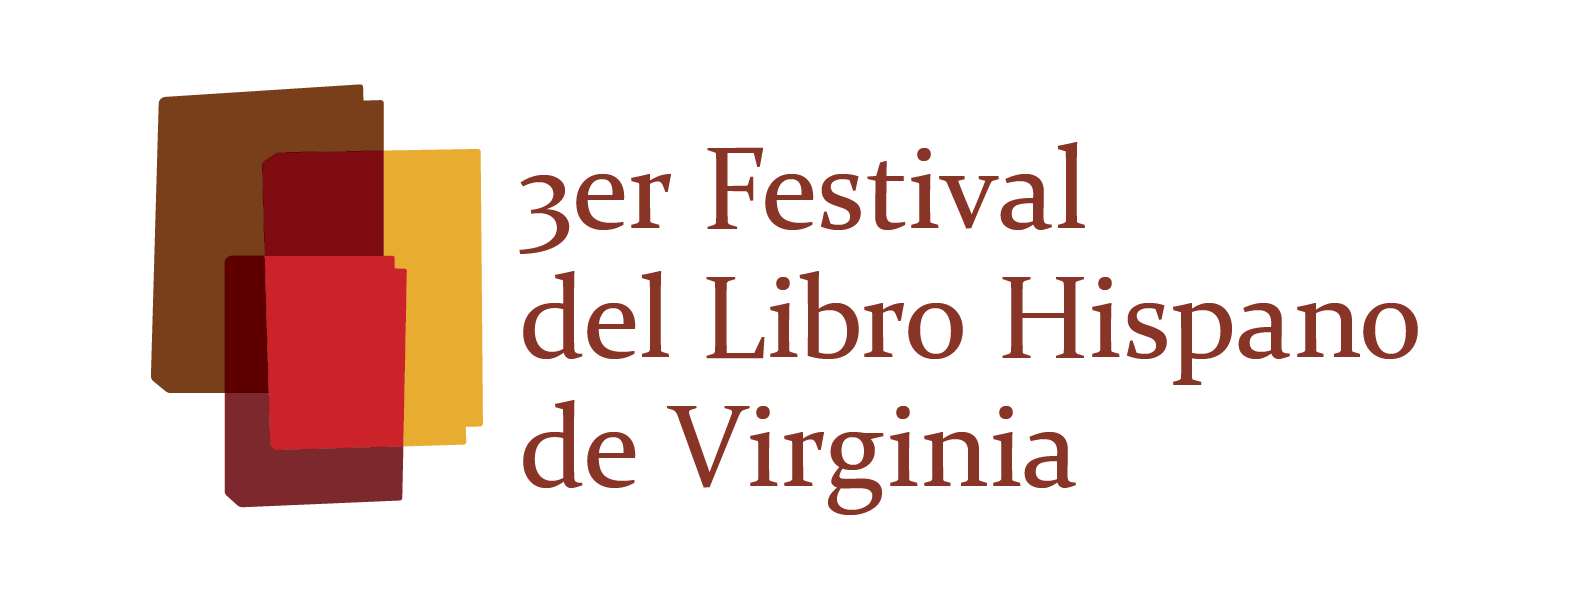 Festival del libro hispano de Virginia